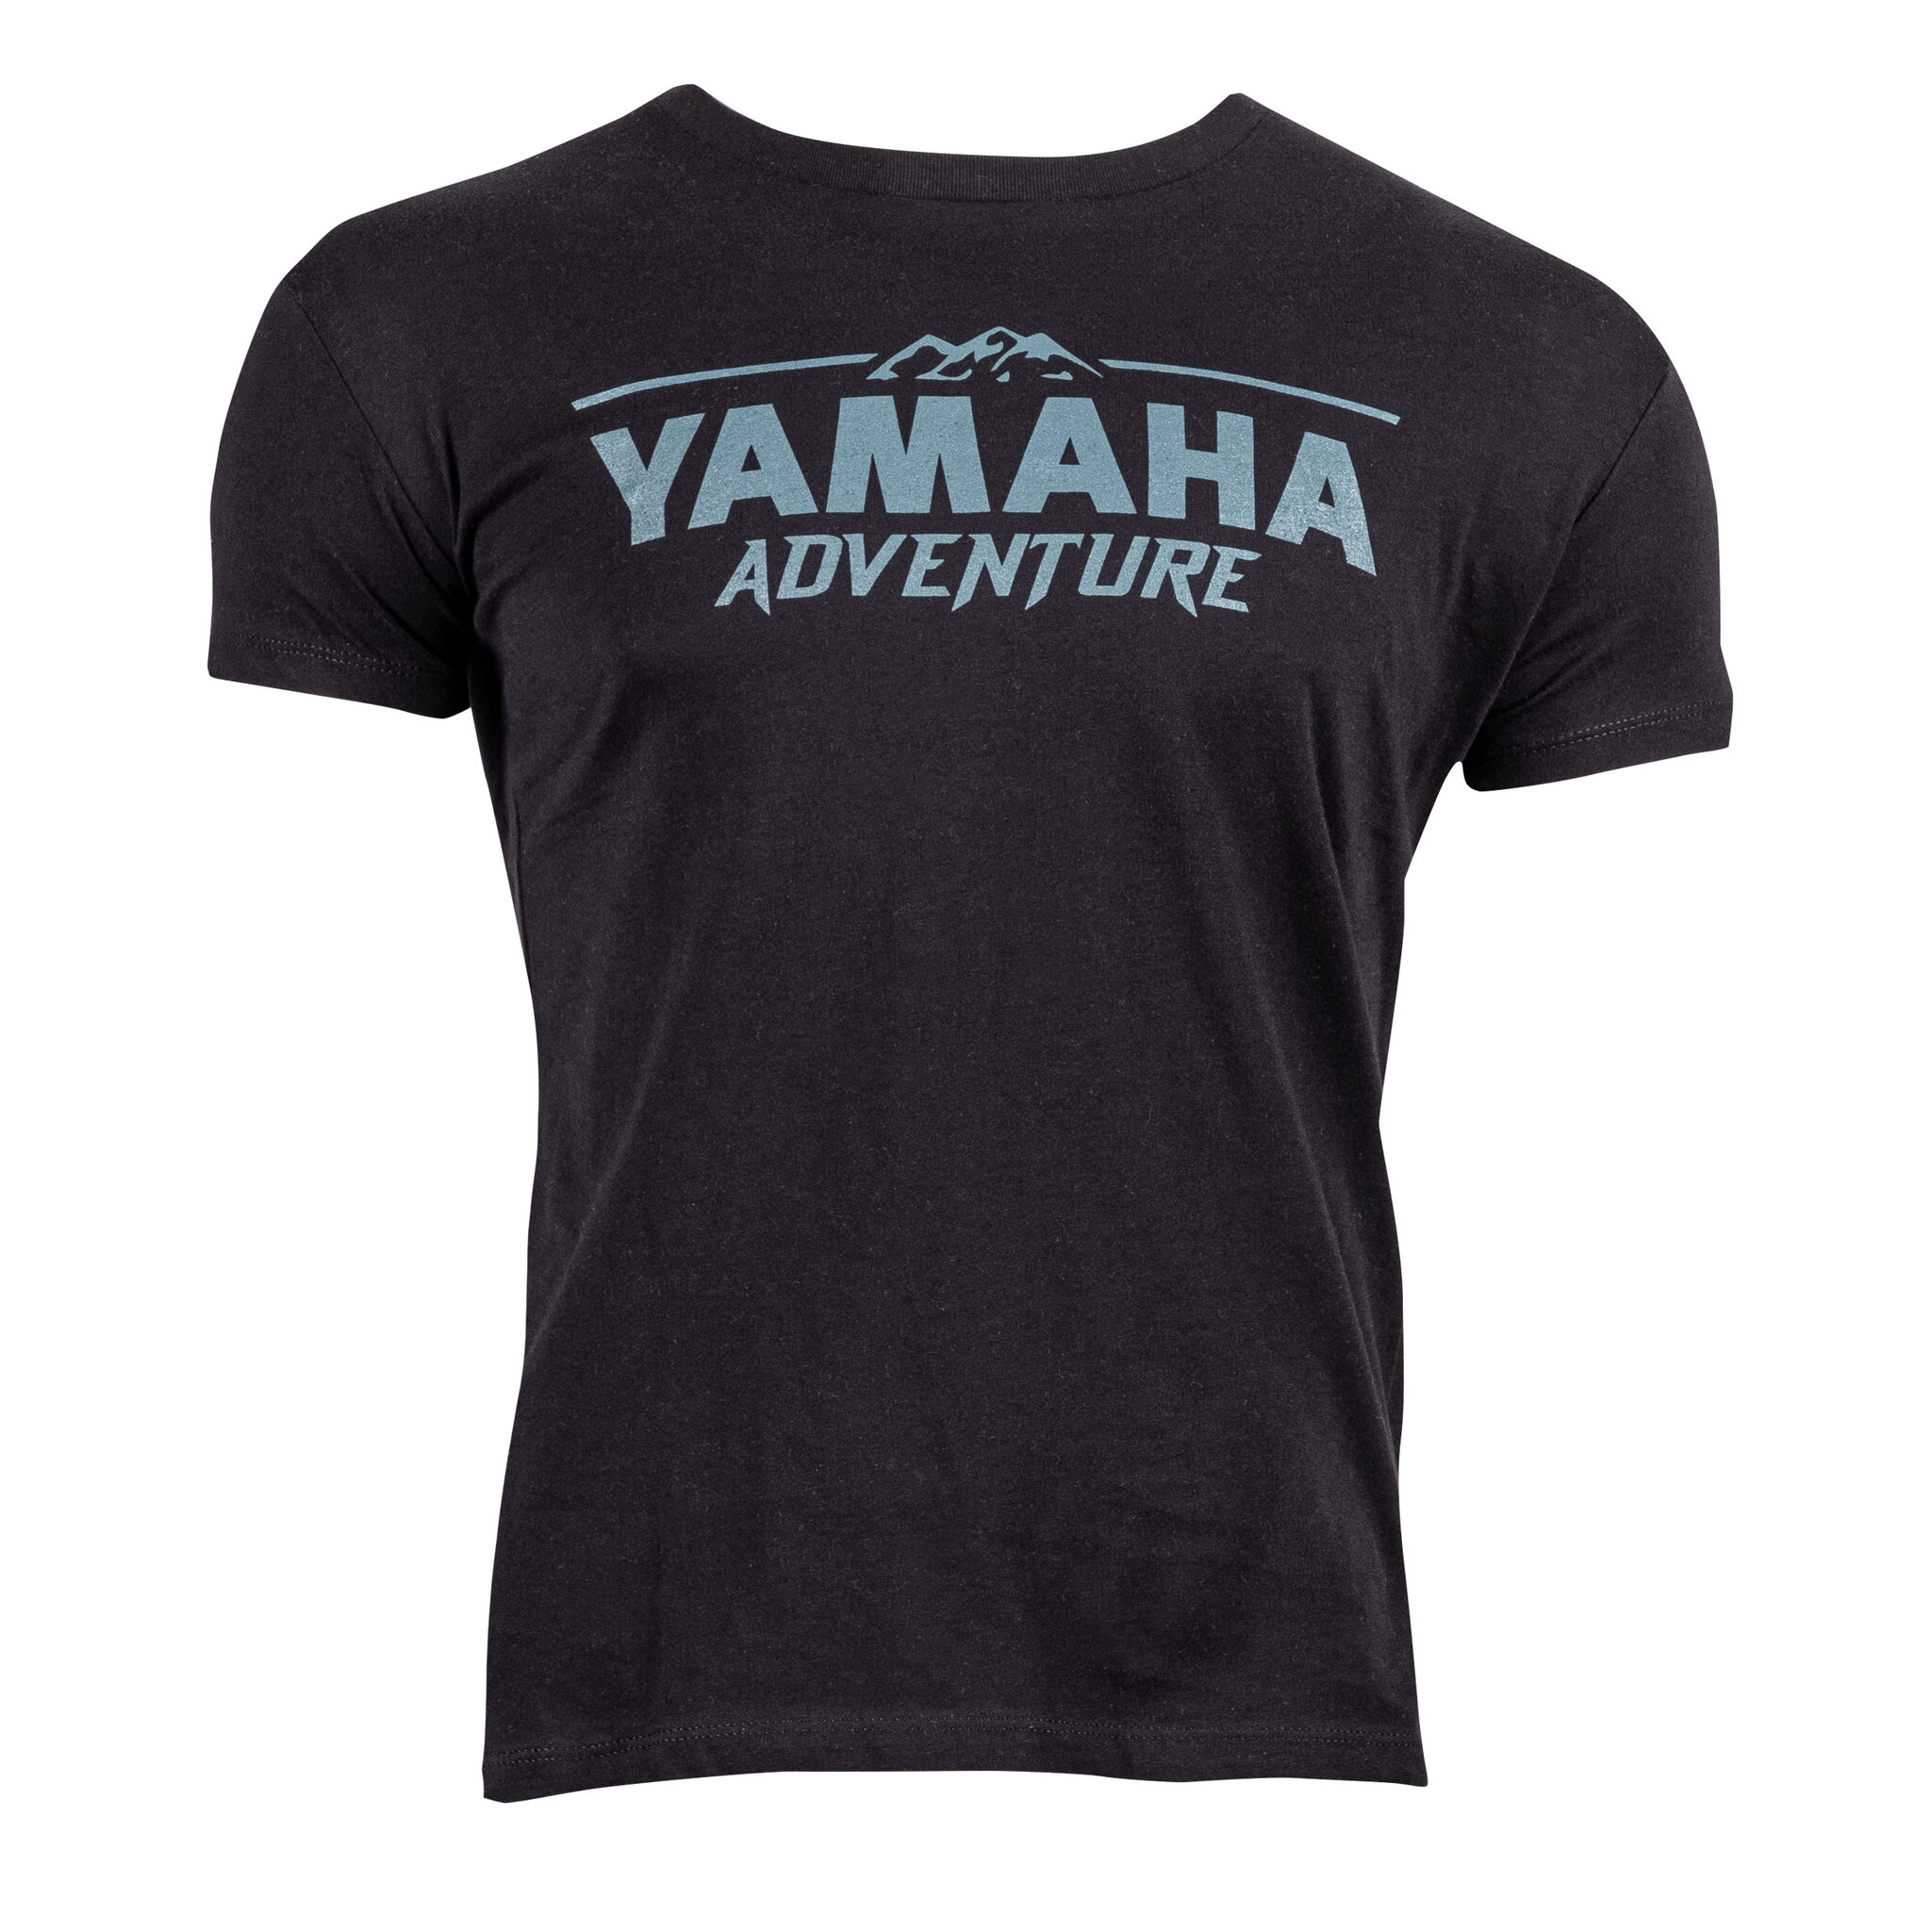 Yamaha Adventure Women's T Shirt Double Extra Large black